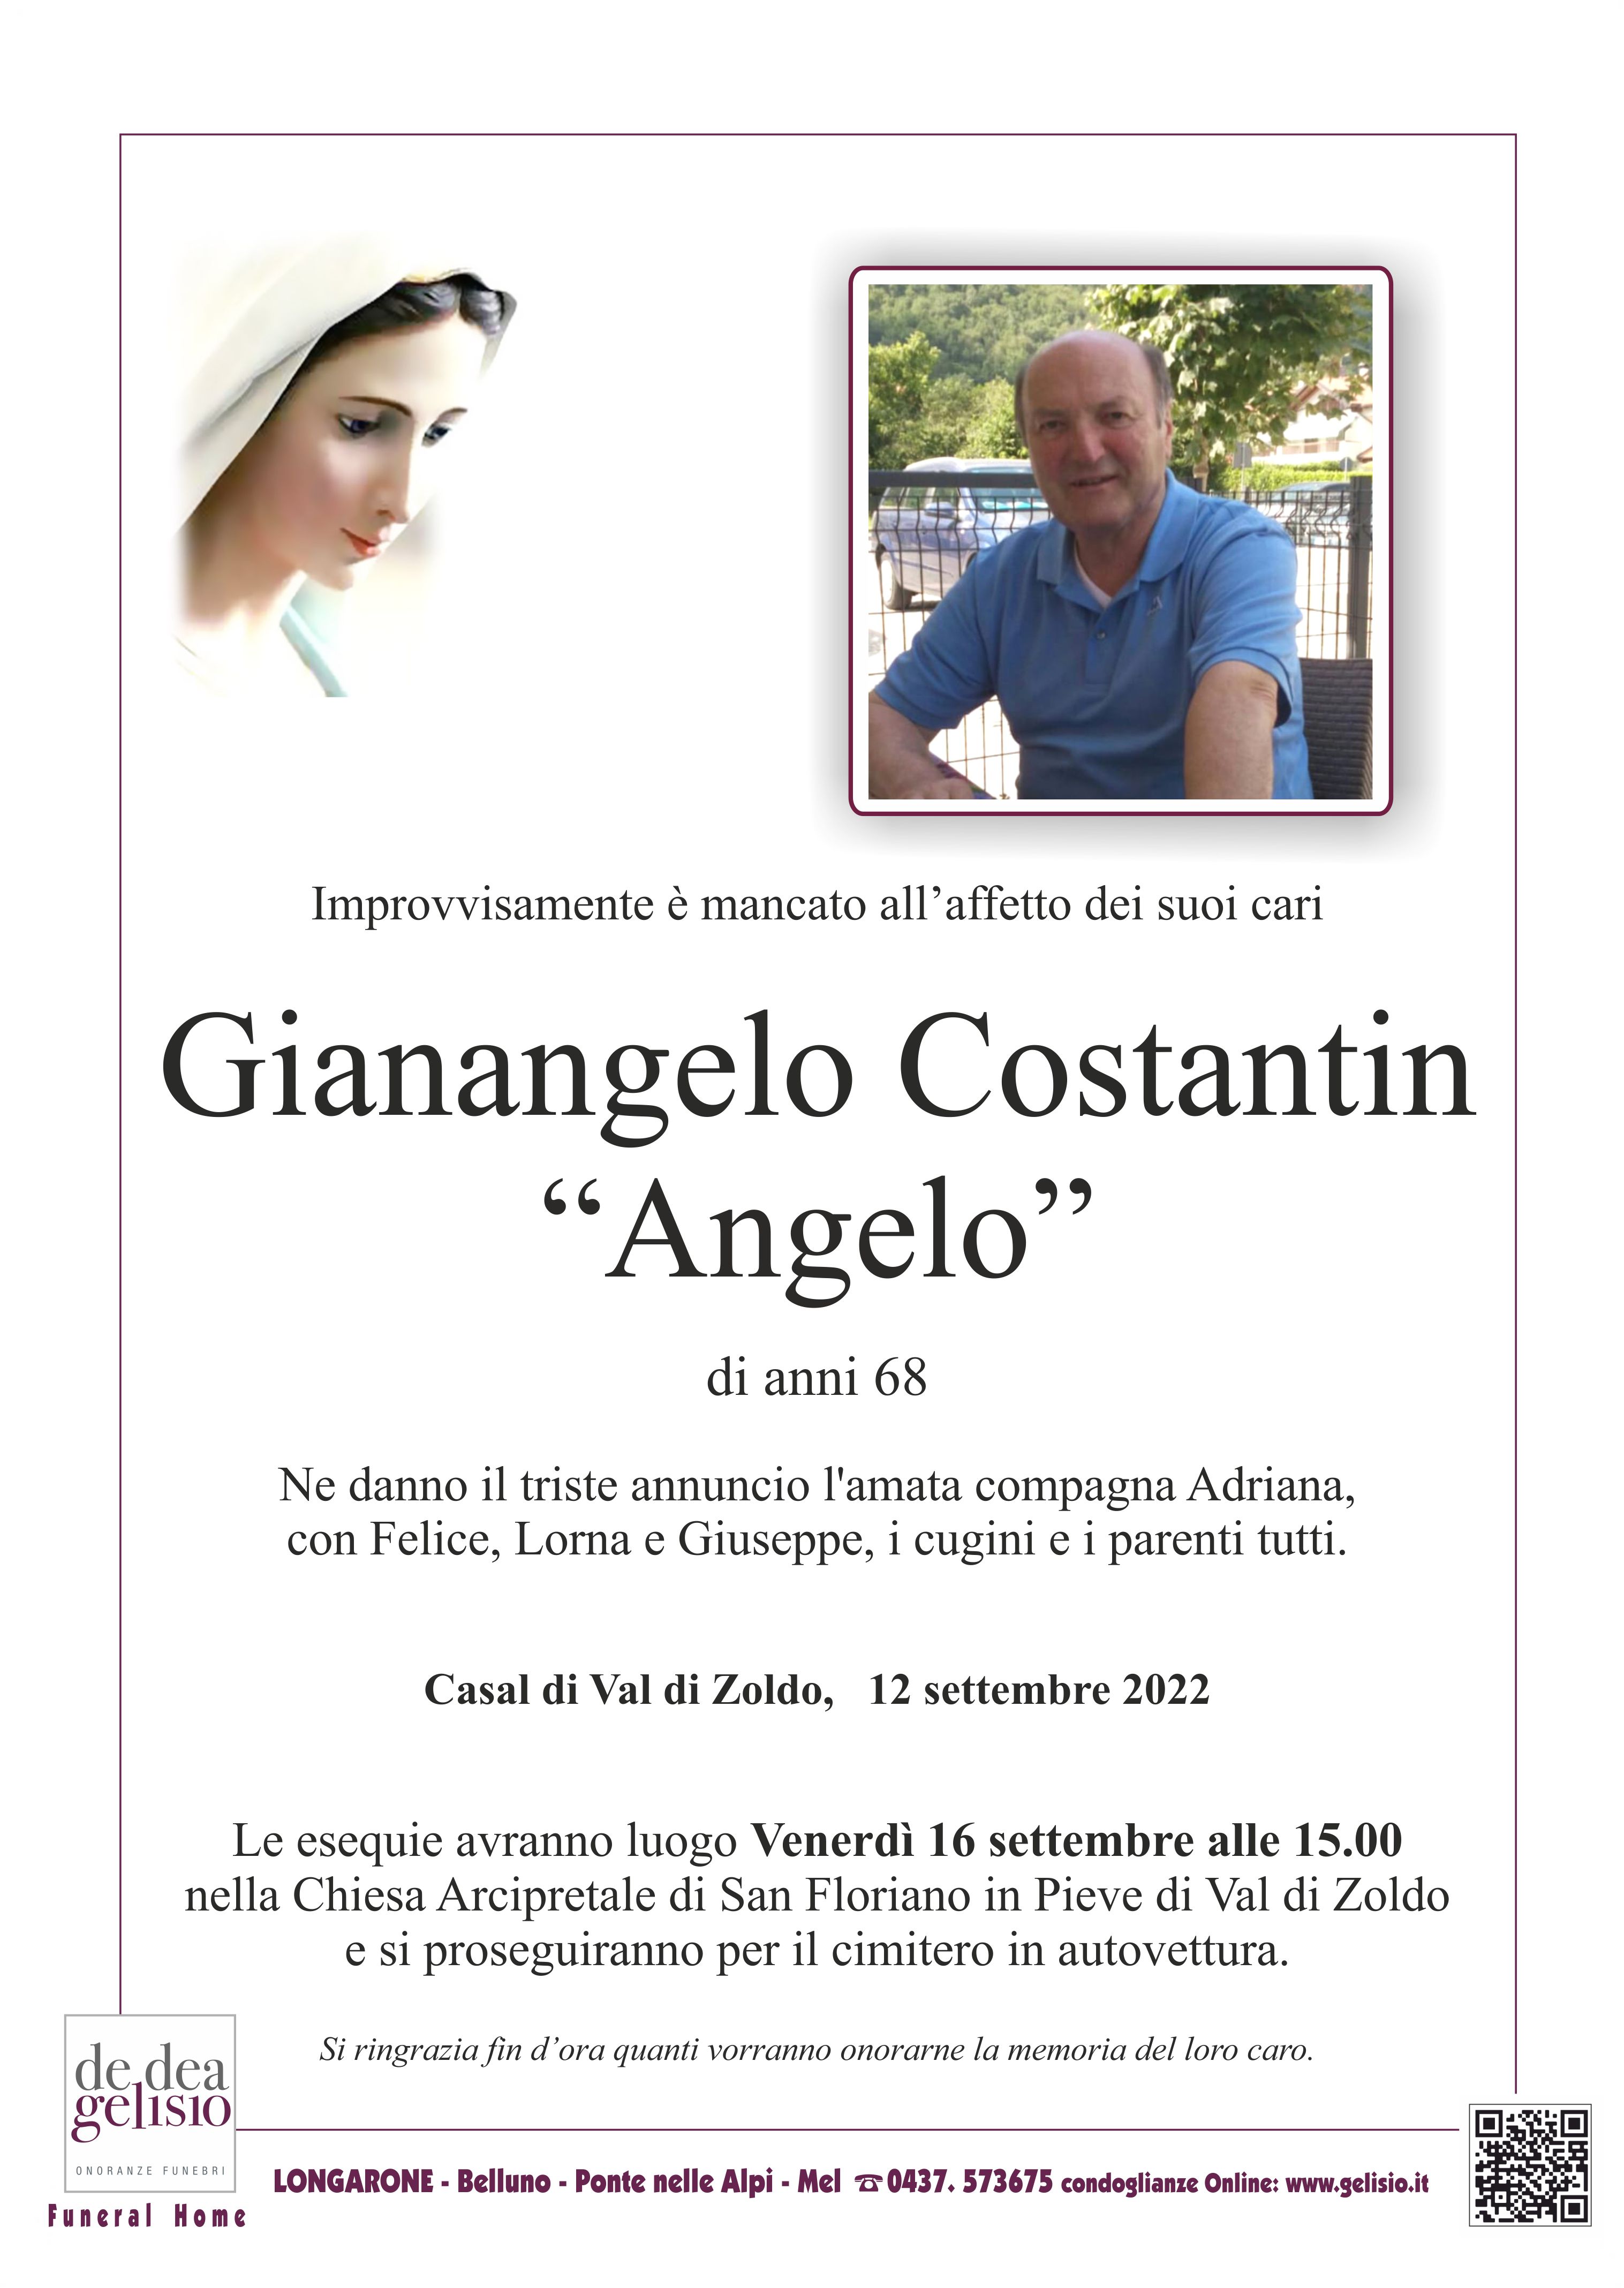 Costantin Gianangelo